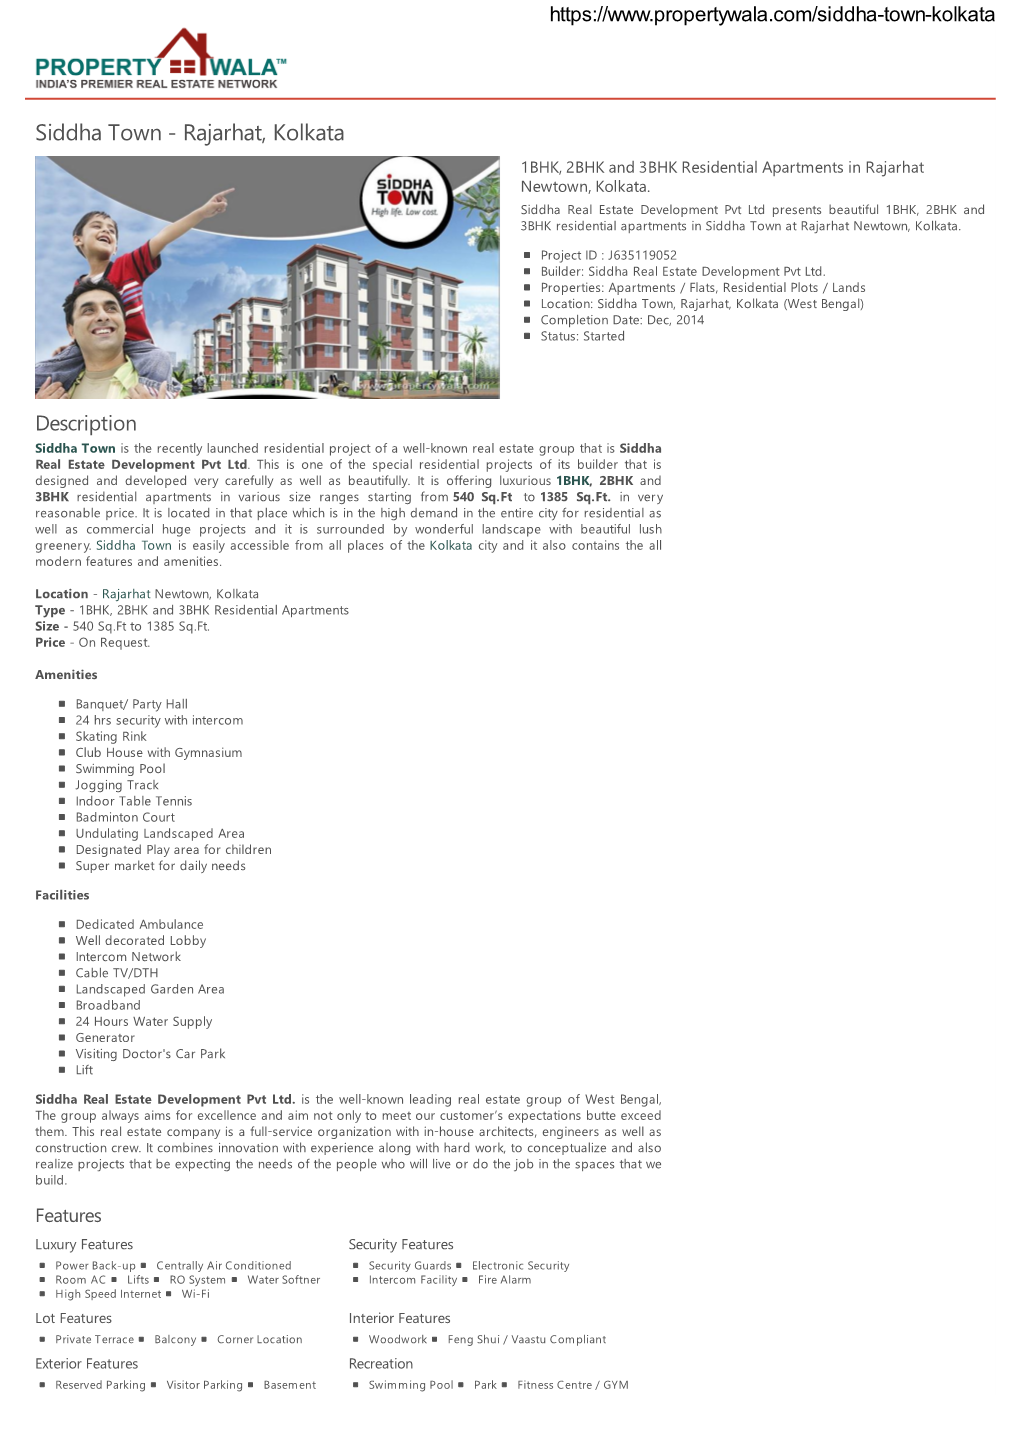 Siddha Town - Rajarhat, Kolkata 1BHK, 2BHK and 3BHK Residential Apartments in Rajarhat Newtown, Kolkata